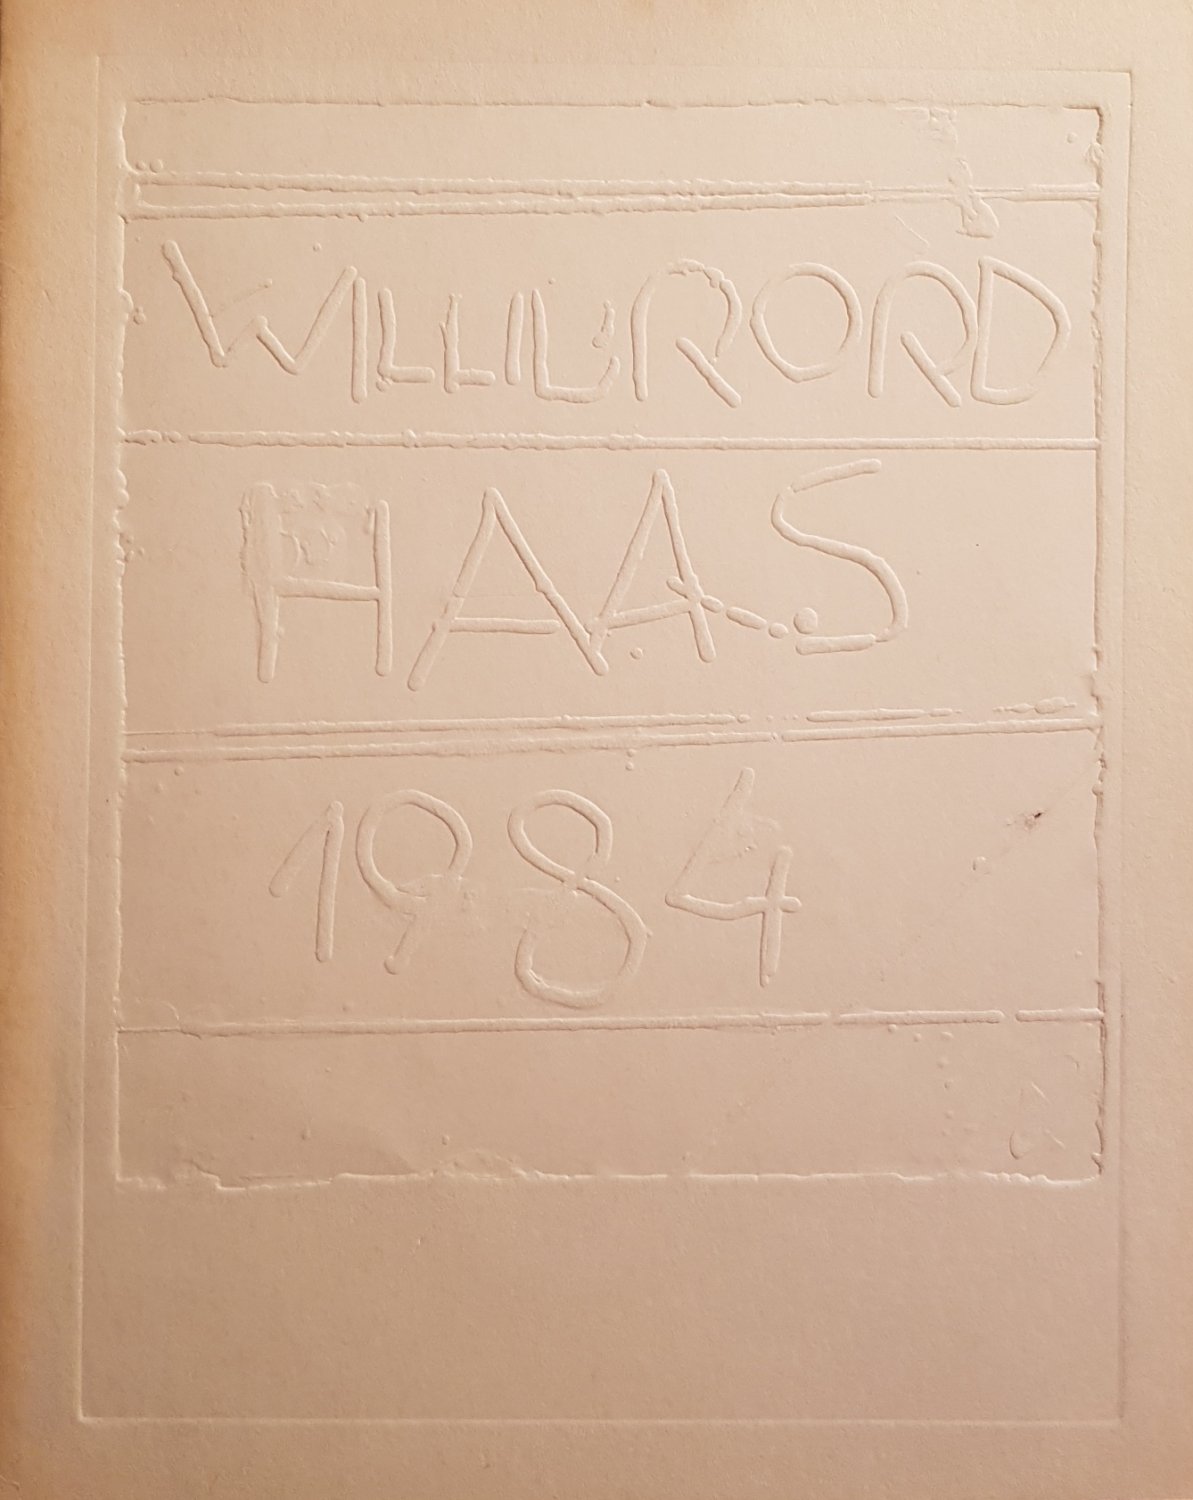 HAAS, Willibrod:  Farbhorizonte von Willibrod Haas. Zur Ausstellung der "Fabrik K 19" im Kunstquartier Ackerstraße, TU. Berlin 4. bis 20. Mai 1984. 